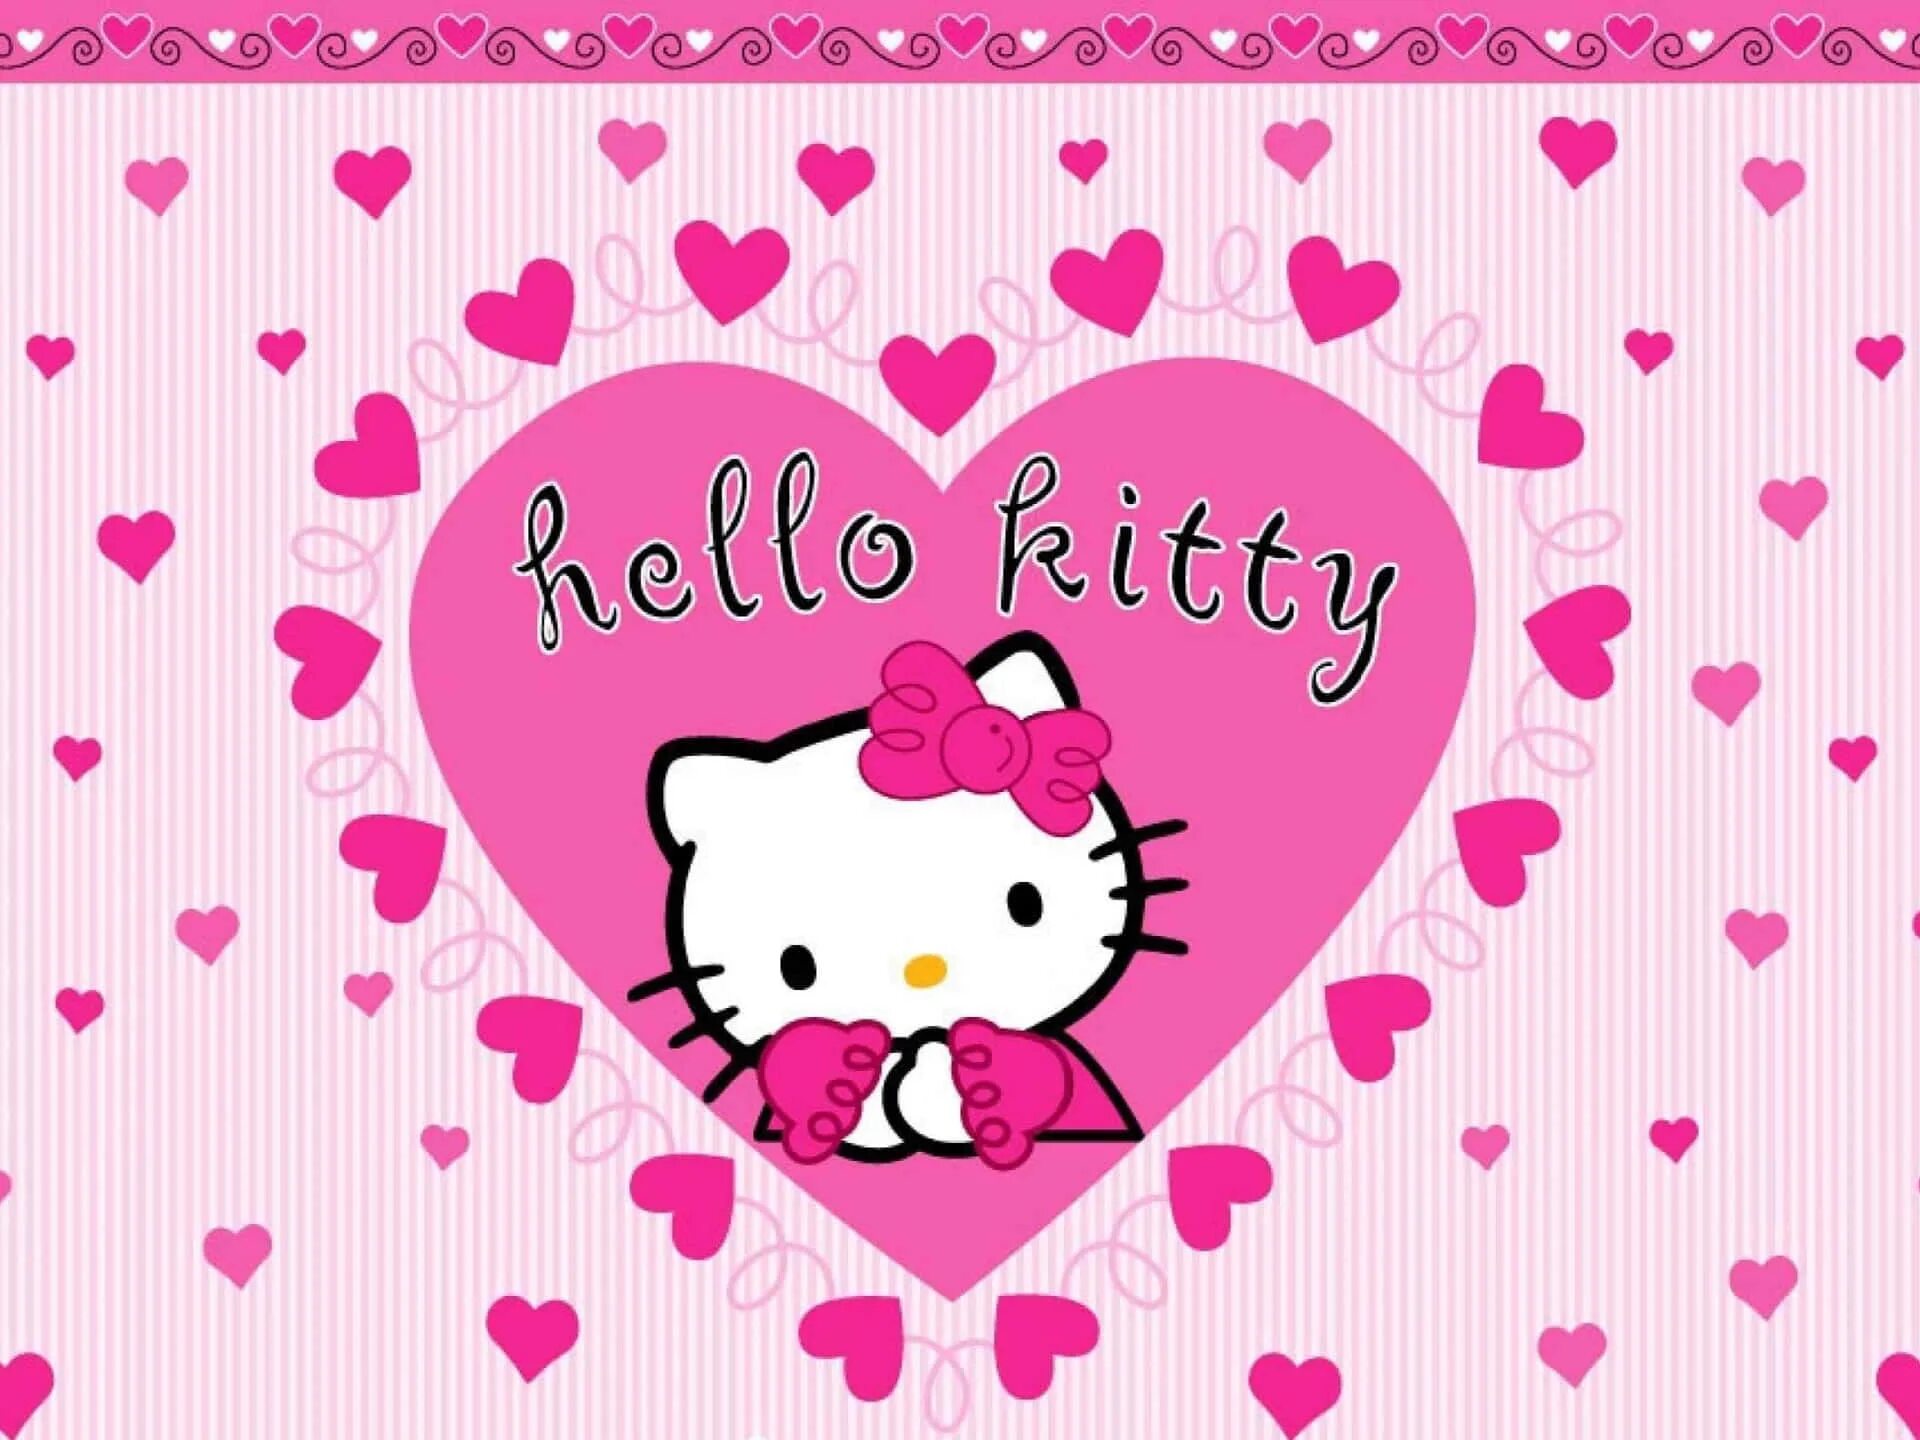 Хелло кит. Китти. Hello Kitty. Хелло Китти фото. Картинки с Хеллоу Китти.